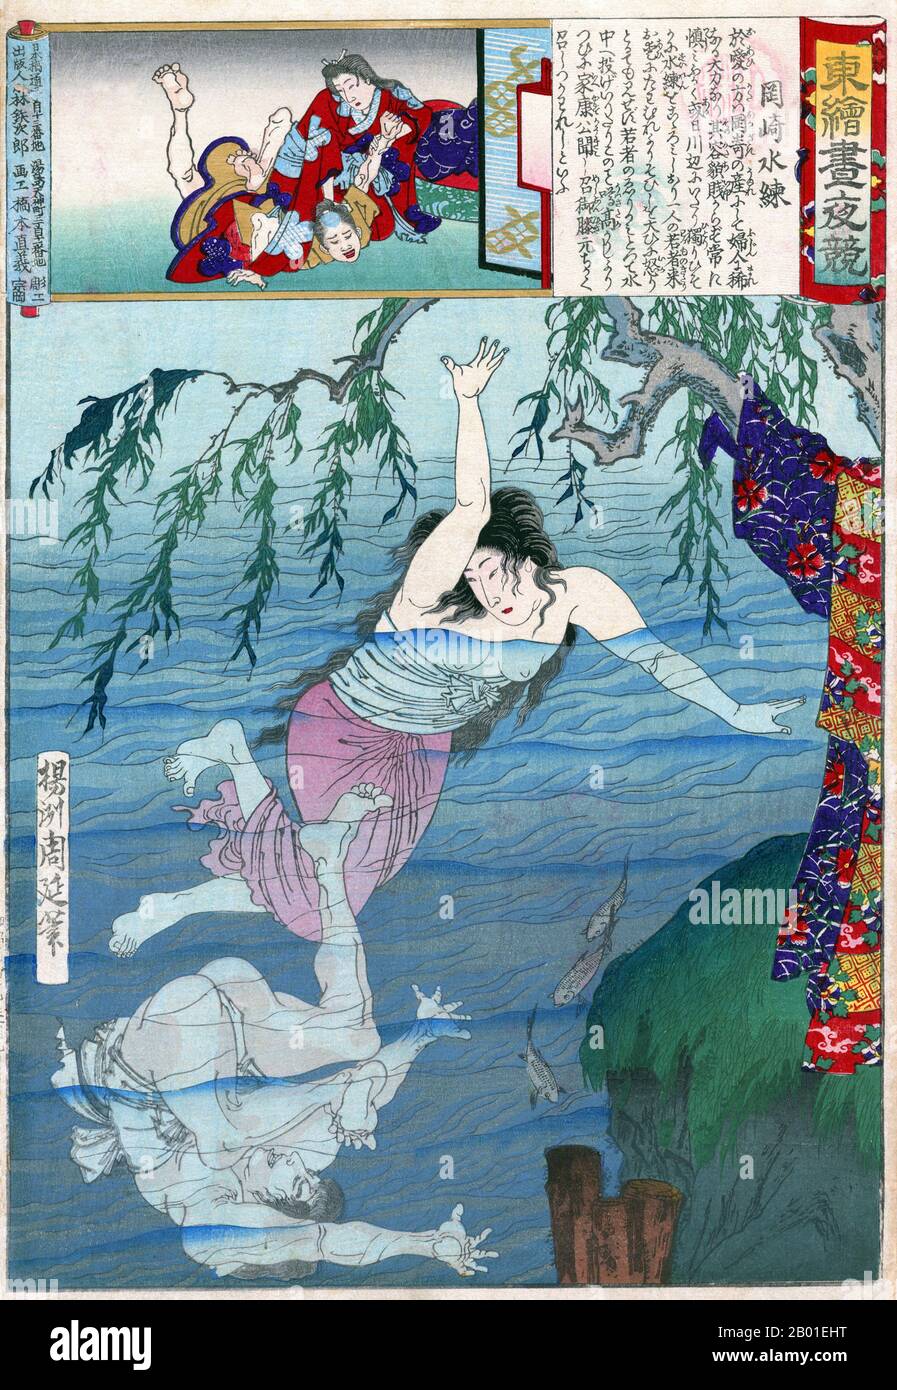 Giappone: OAI No Kata nuoto a Okazaki. Stampa in blocco di legno ukiyo-e di Yoshu Chikanobu (1838-1912), 1886. OAI No kata è nato a Okazaki ed è stato bello e forte, anche se di basso stato sociale. Un giorno, mentre nuotava in un fiume, un giovane cercò di disturbarla, ma lei lo sconfisse rapidamente. Secondo la cartouche, anche lo shogun Tokugawa Ieyasu lodò il suo coraggio. Toyohara Chikanobu, meglio conosciuto ai suoi contemporanei come Yōshū Chikanobu, fu un prolifico artista di blocchi di legno del periodo giapponese Meiji. Le sue opere catturano la transizione dall'età del samurai alla modernità di Meiji. Foto Stock